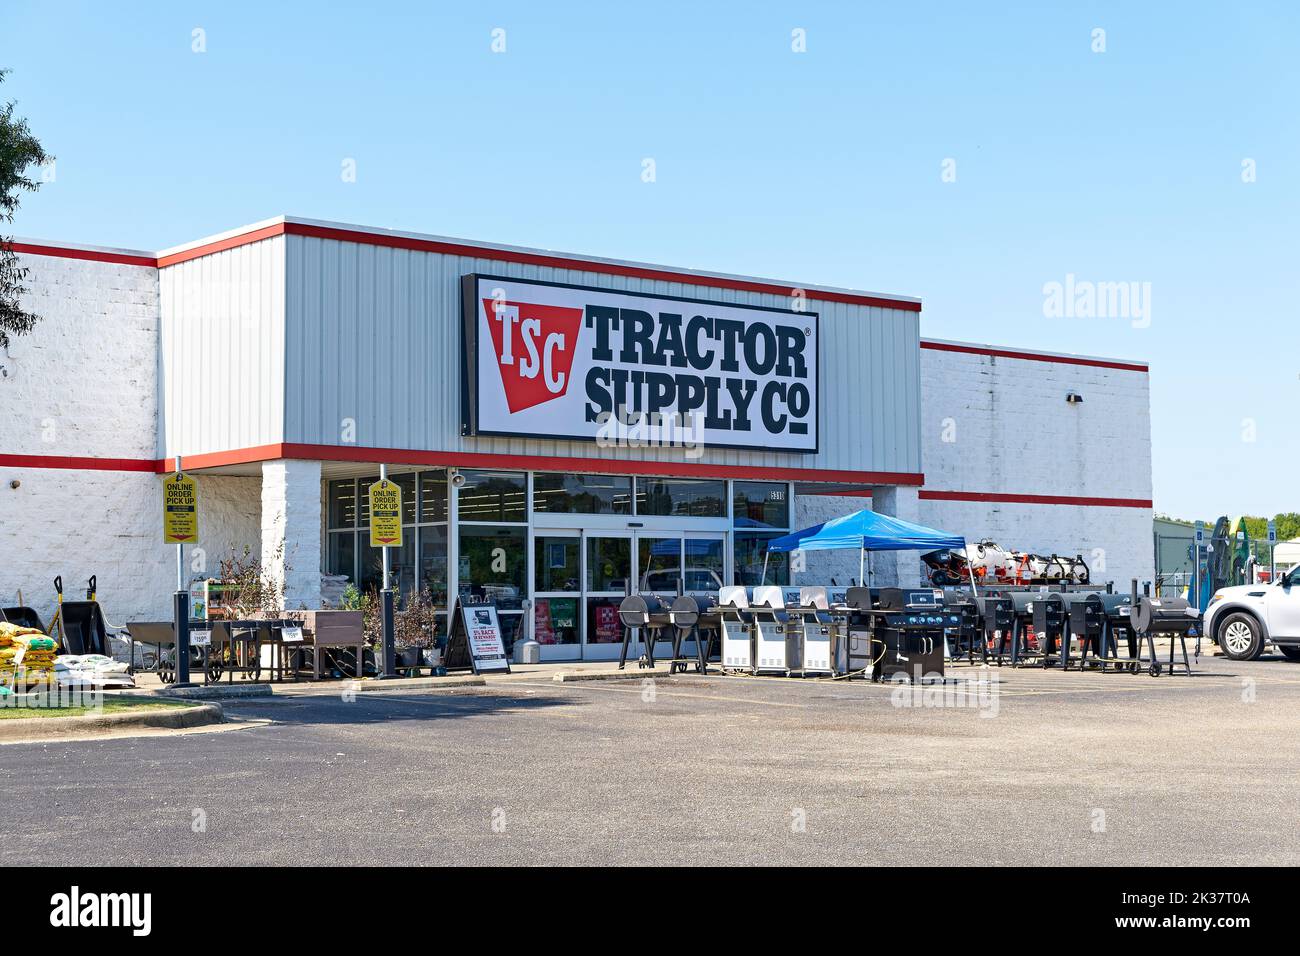 La entrada exterior de la tienda de suministros de la granja y rancho Tractor Supply Company en Montgomery Alabama, EE.UU. Foto de stock